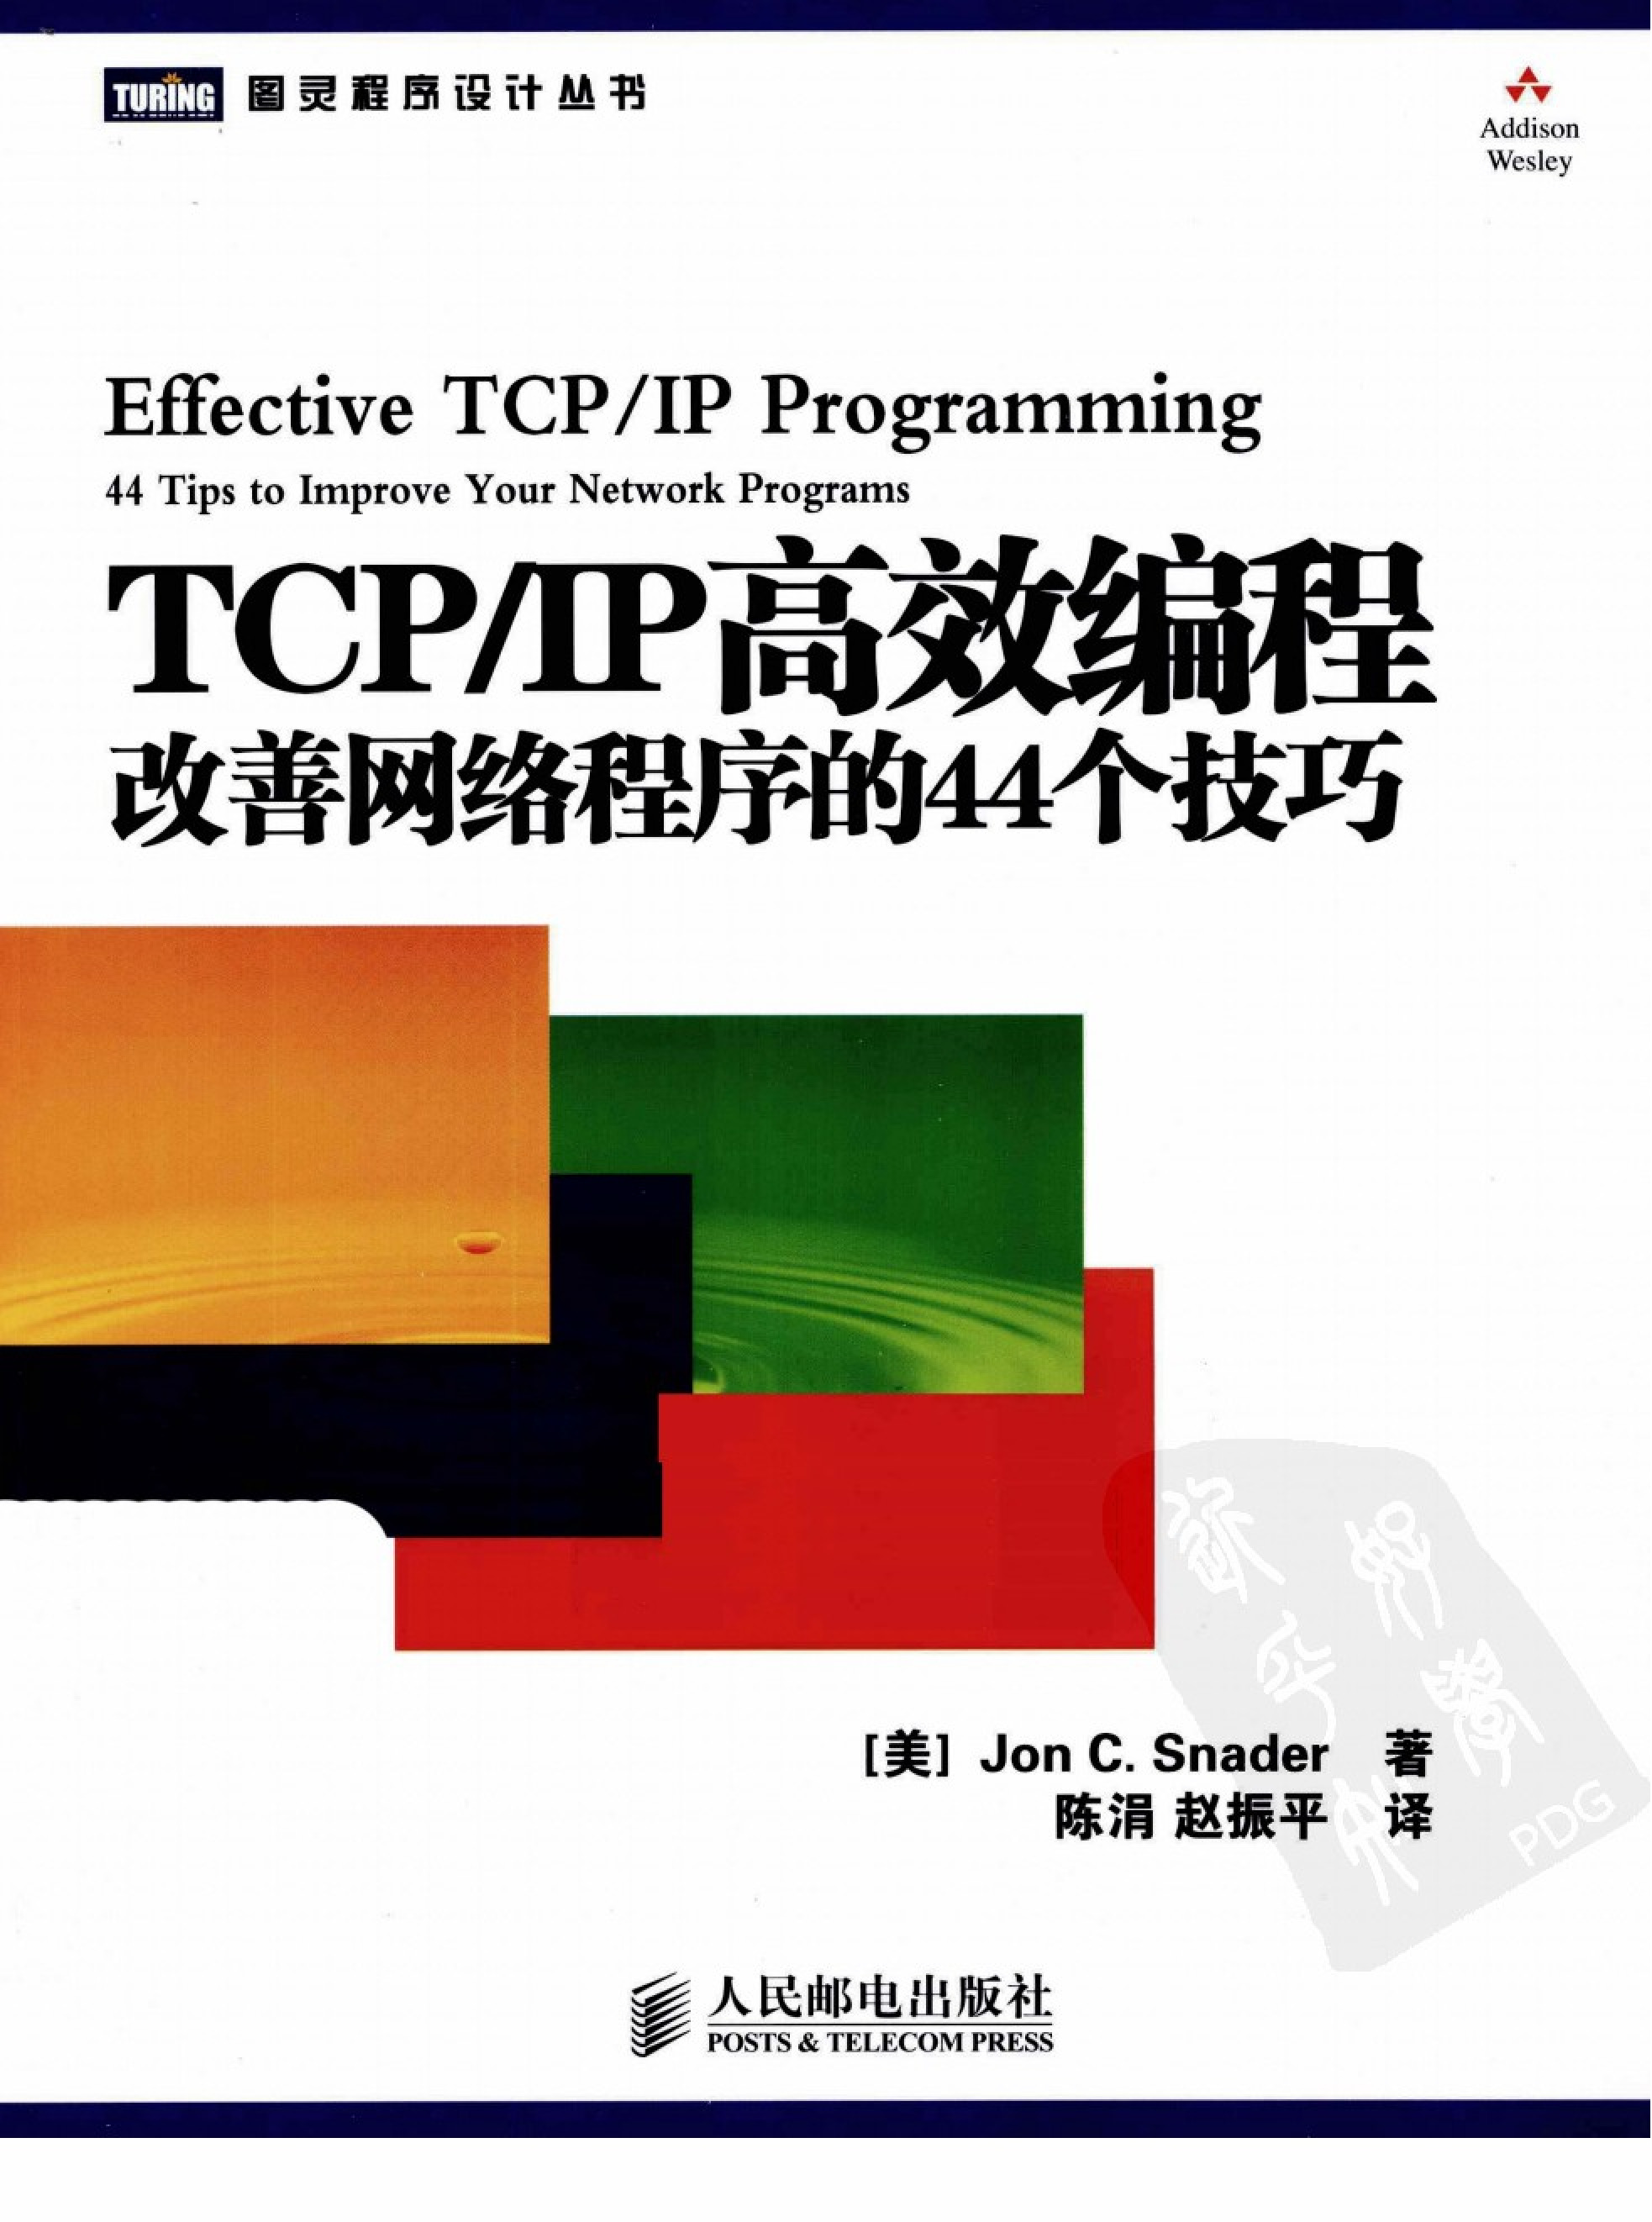 tcp+ip高效编程++改善网络程序的44个技巧